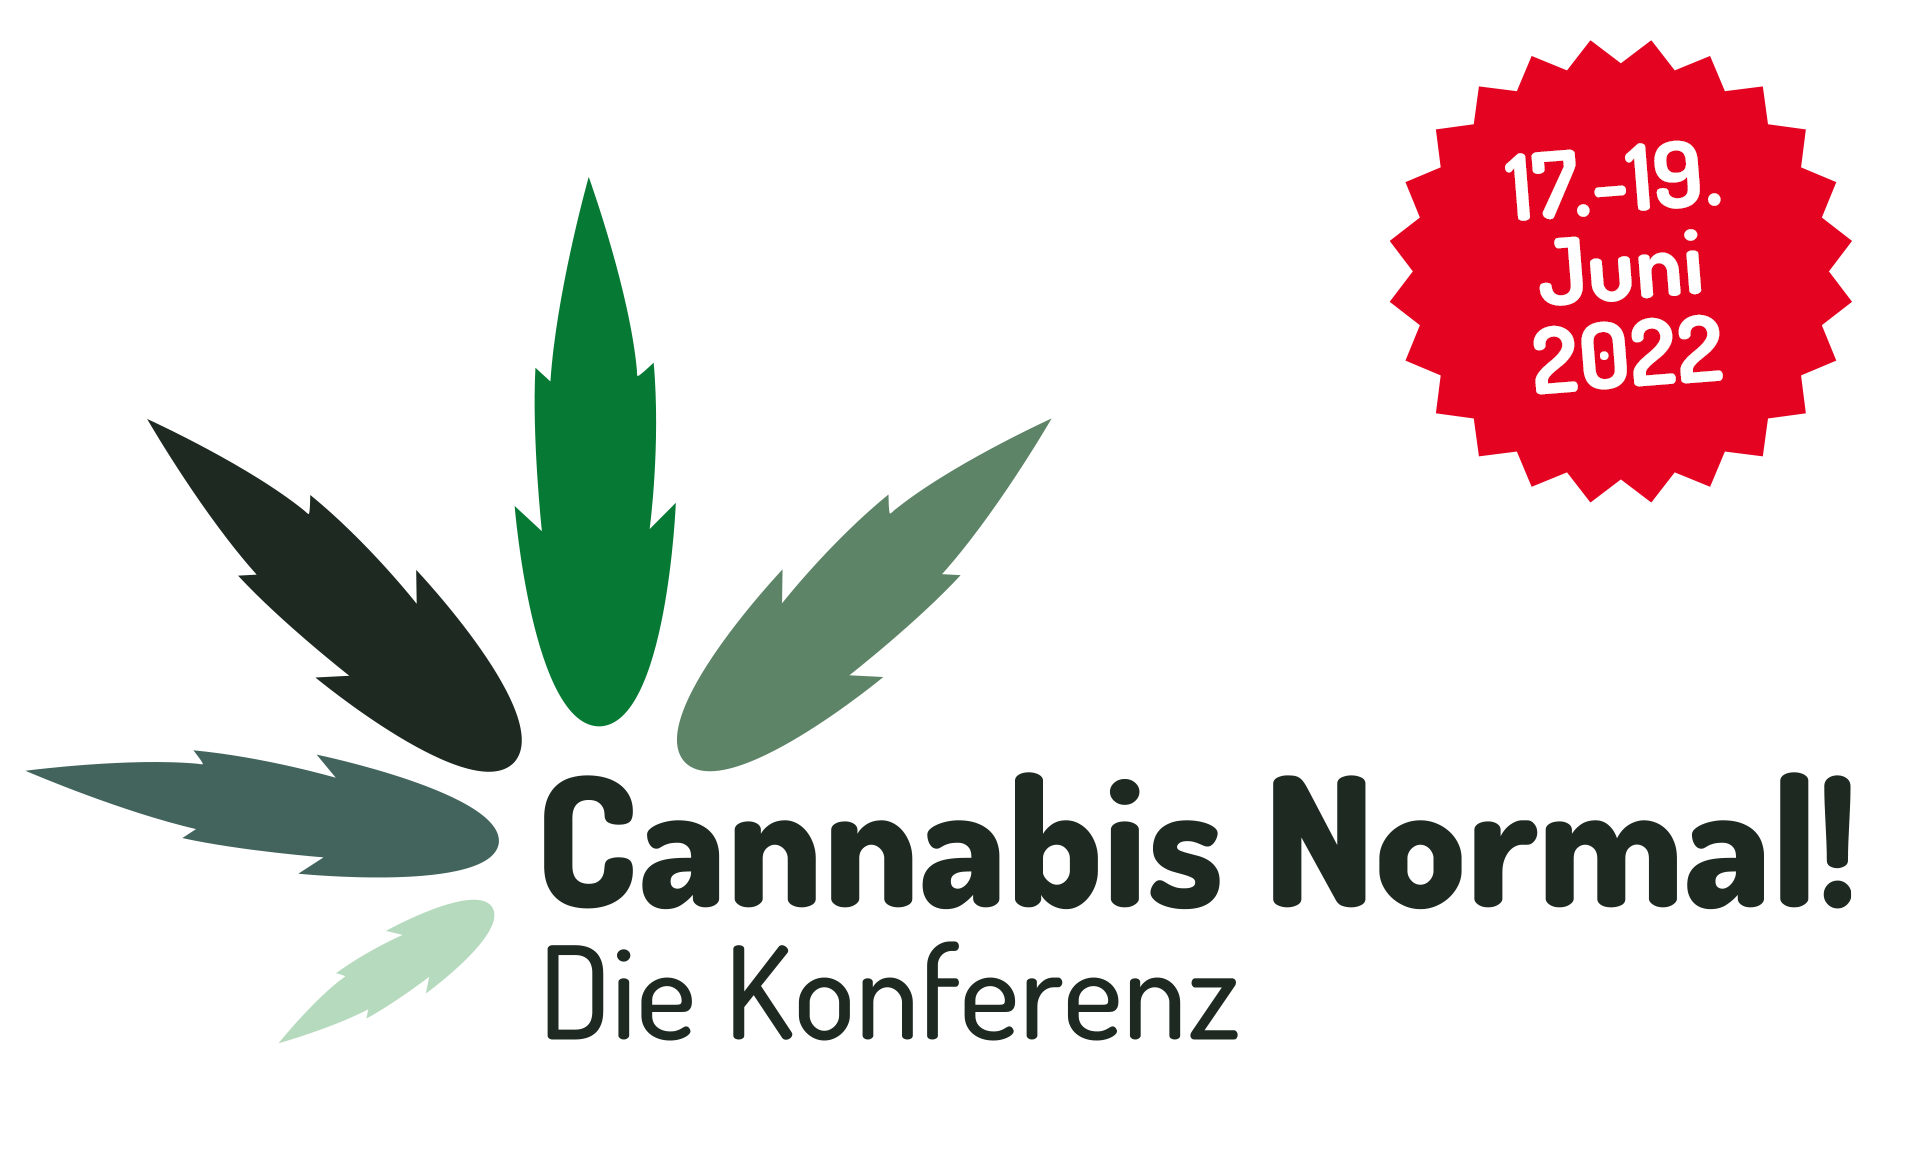 Cannabis Normal! Konferenz 2022 – Hanfszene diskutiert Eckpunkte des DHV zur Legalisierung